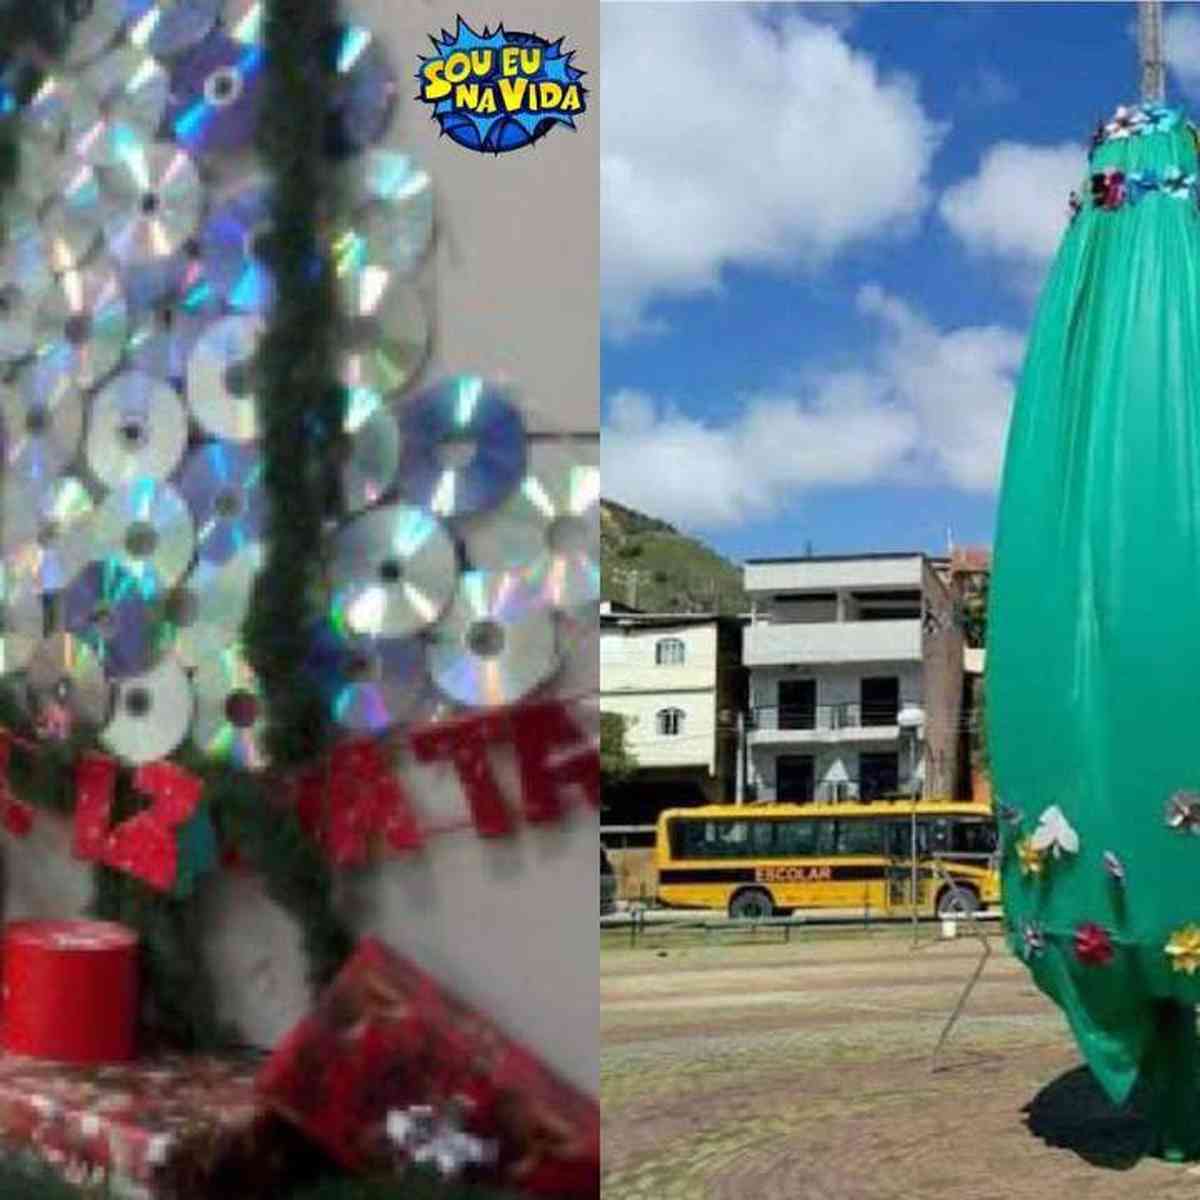 Enfeites de Natal desengonçados viram piada na internet - Nacional - Estado  de Minas